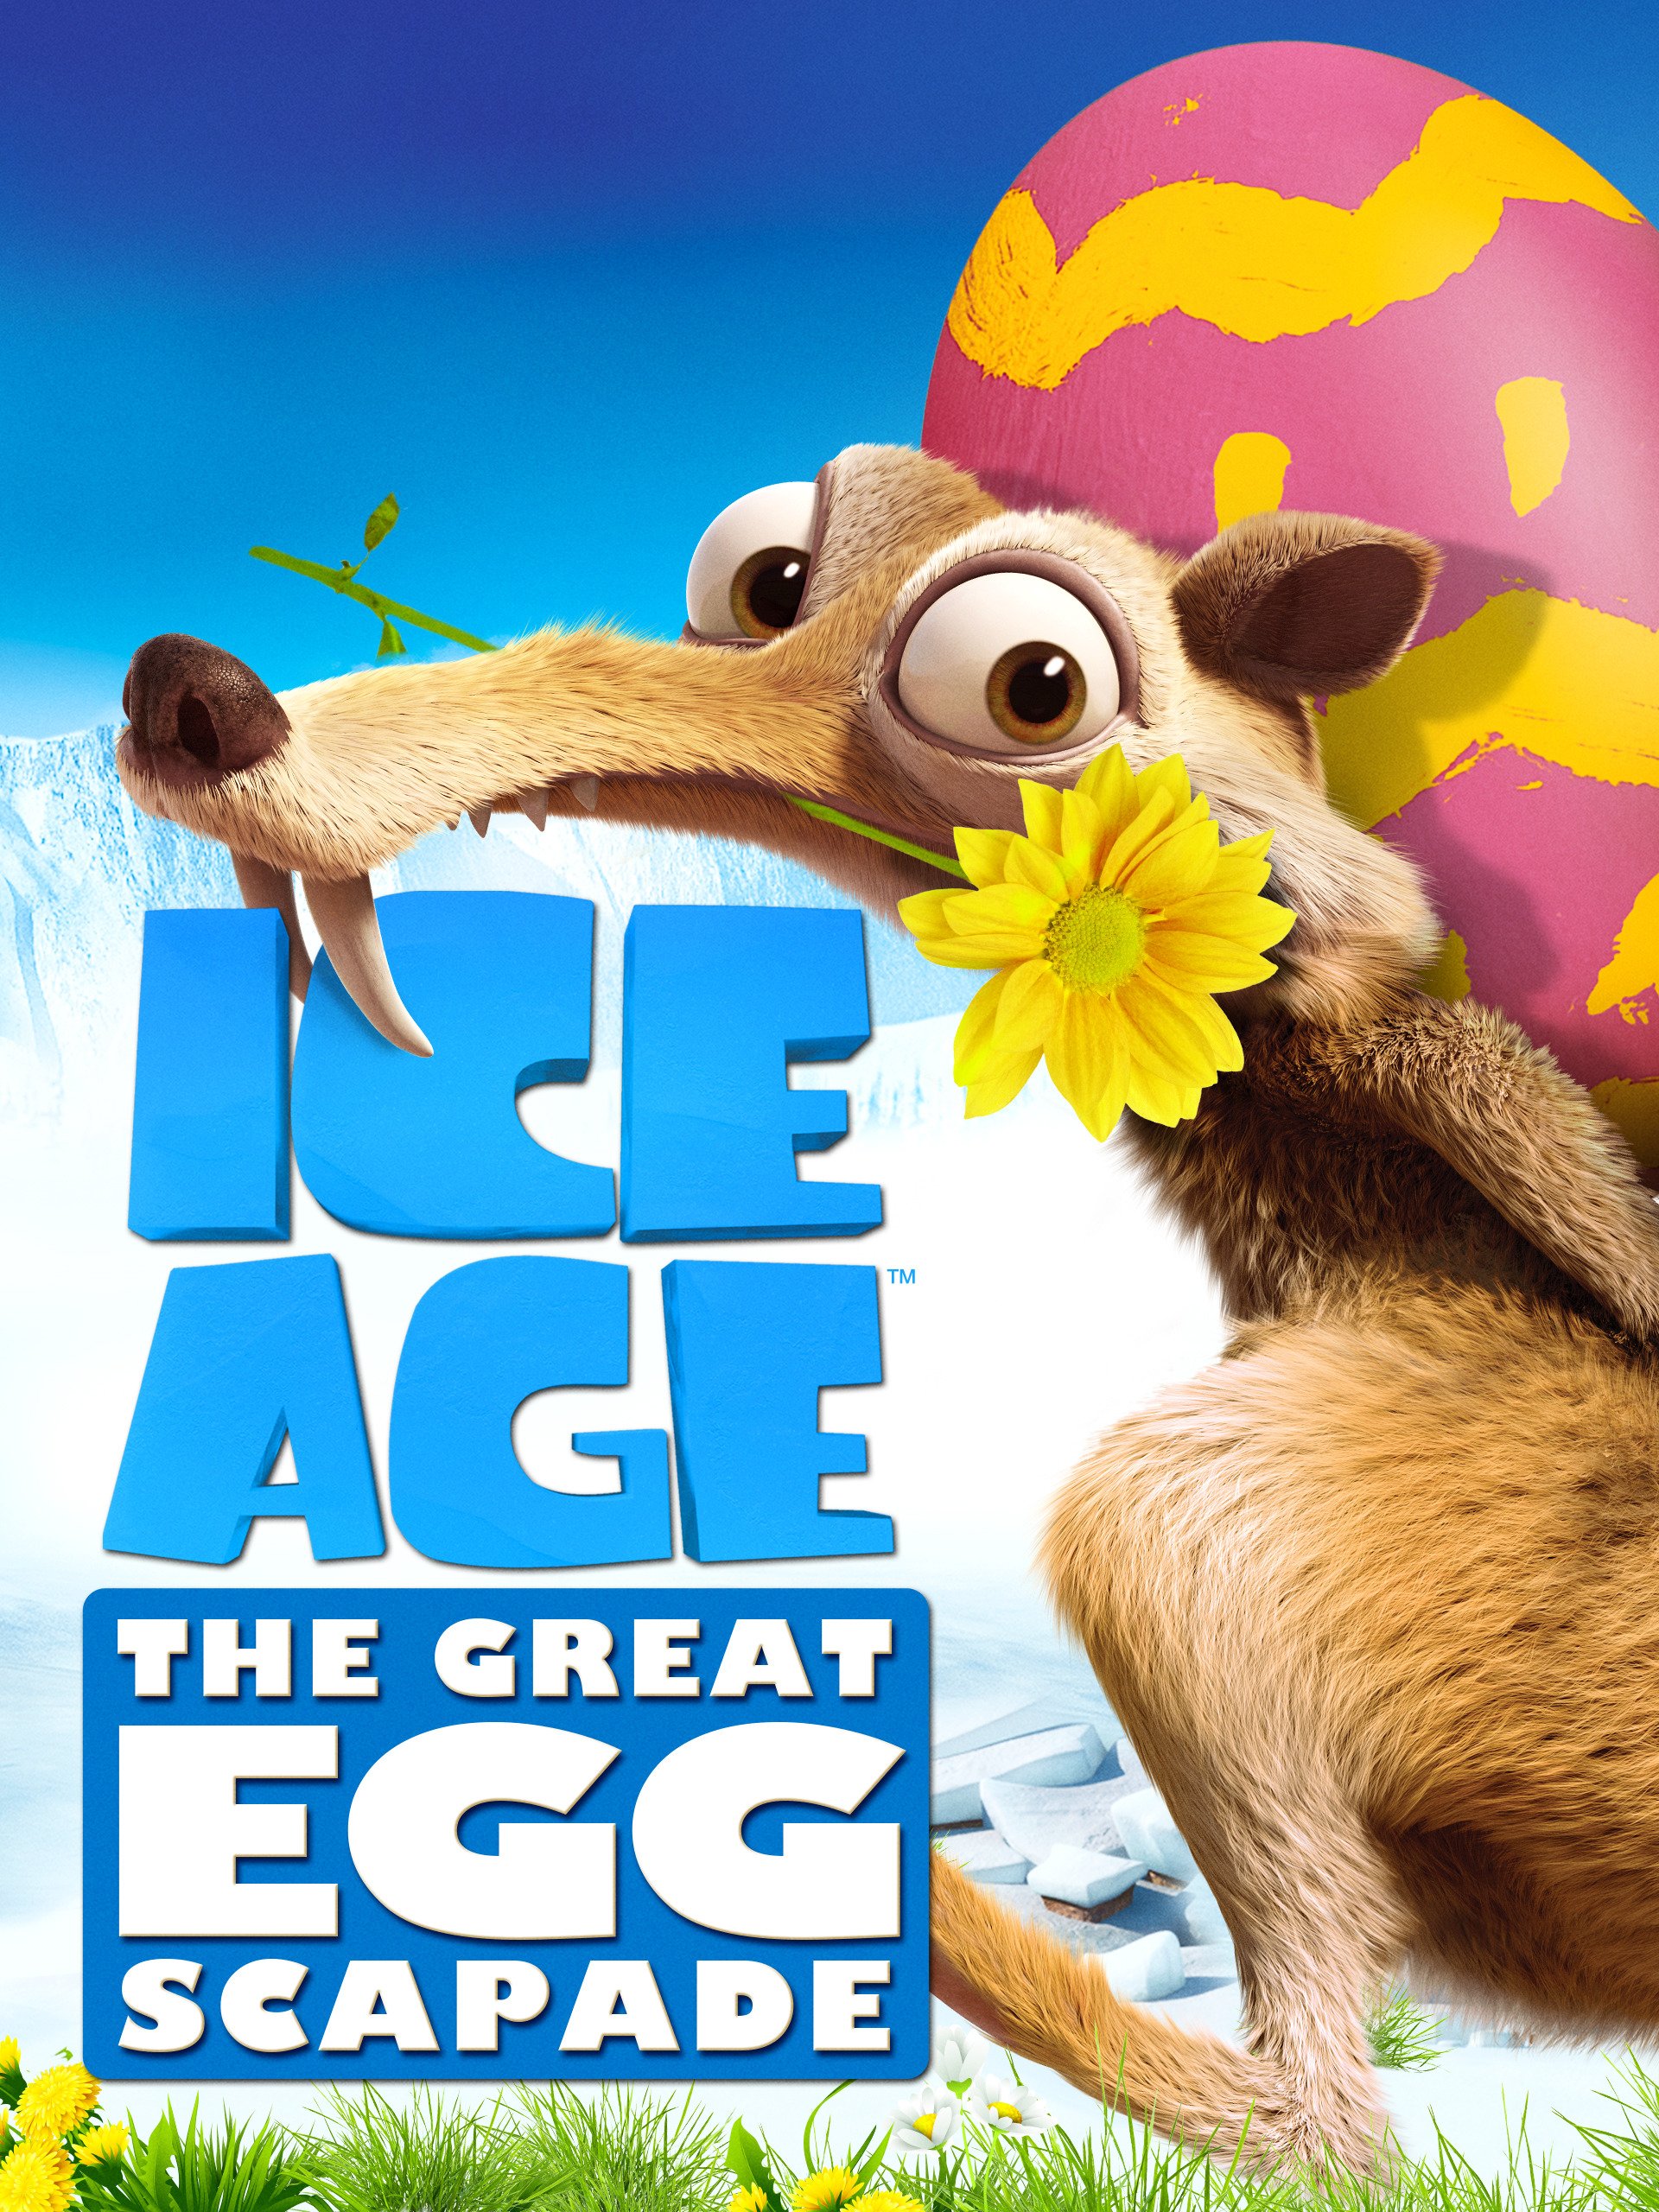 ดูหนังออนไลน์HD ICE AGE THE GREAT EGG-SCAPADE (2016) ไอซ์ เอจ เจาะยุคน้ำแข็งมหัศจรรย์ หนังเต็มเรื่อง หนังมาสเตอร์ ดูหนังHD ดูหนังออนไลน์ ดูหนังใหม่